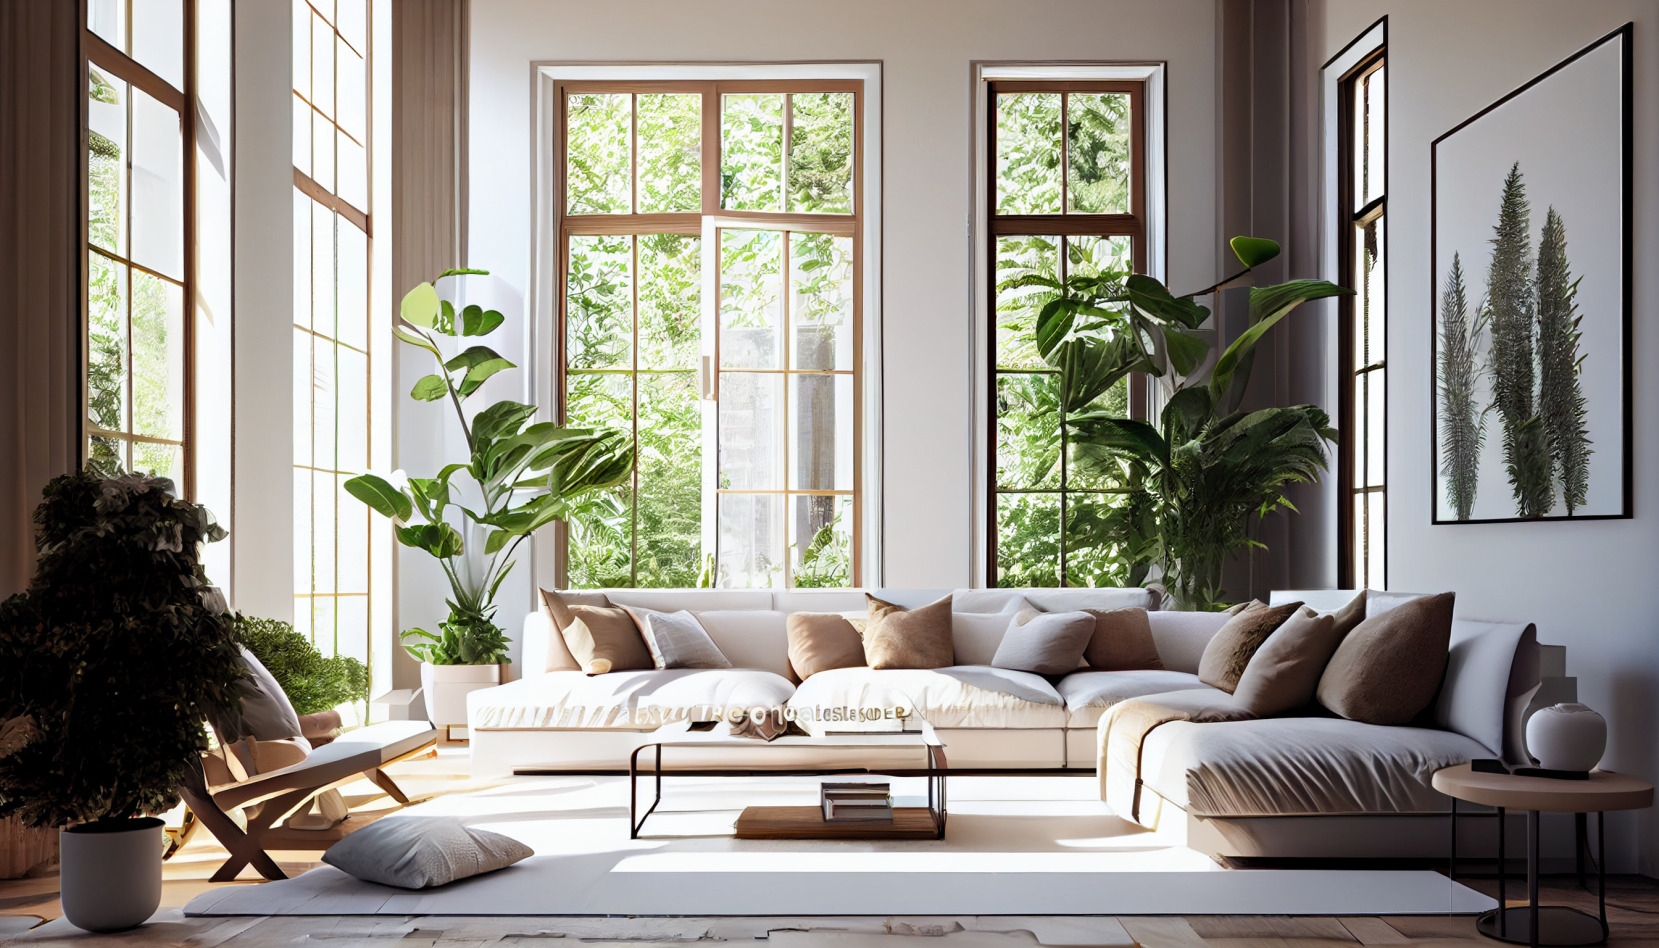 Un salon contemporain lumineux avec des grandes fenêtres, des canapés crème, et des grandes plantes.